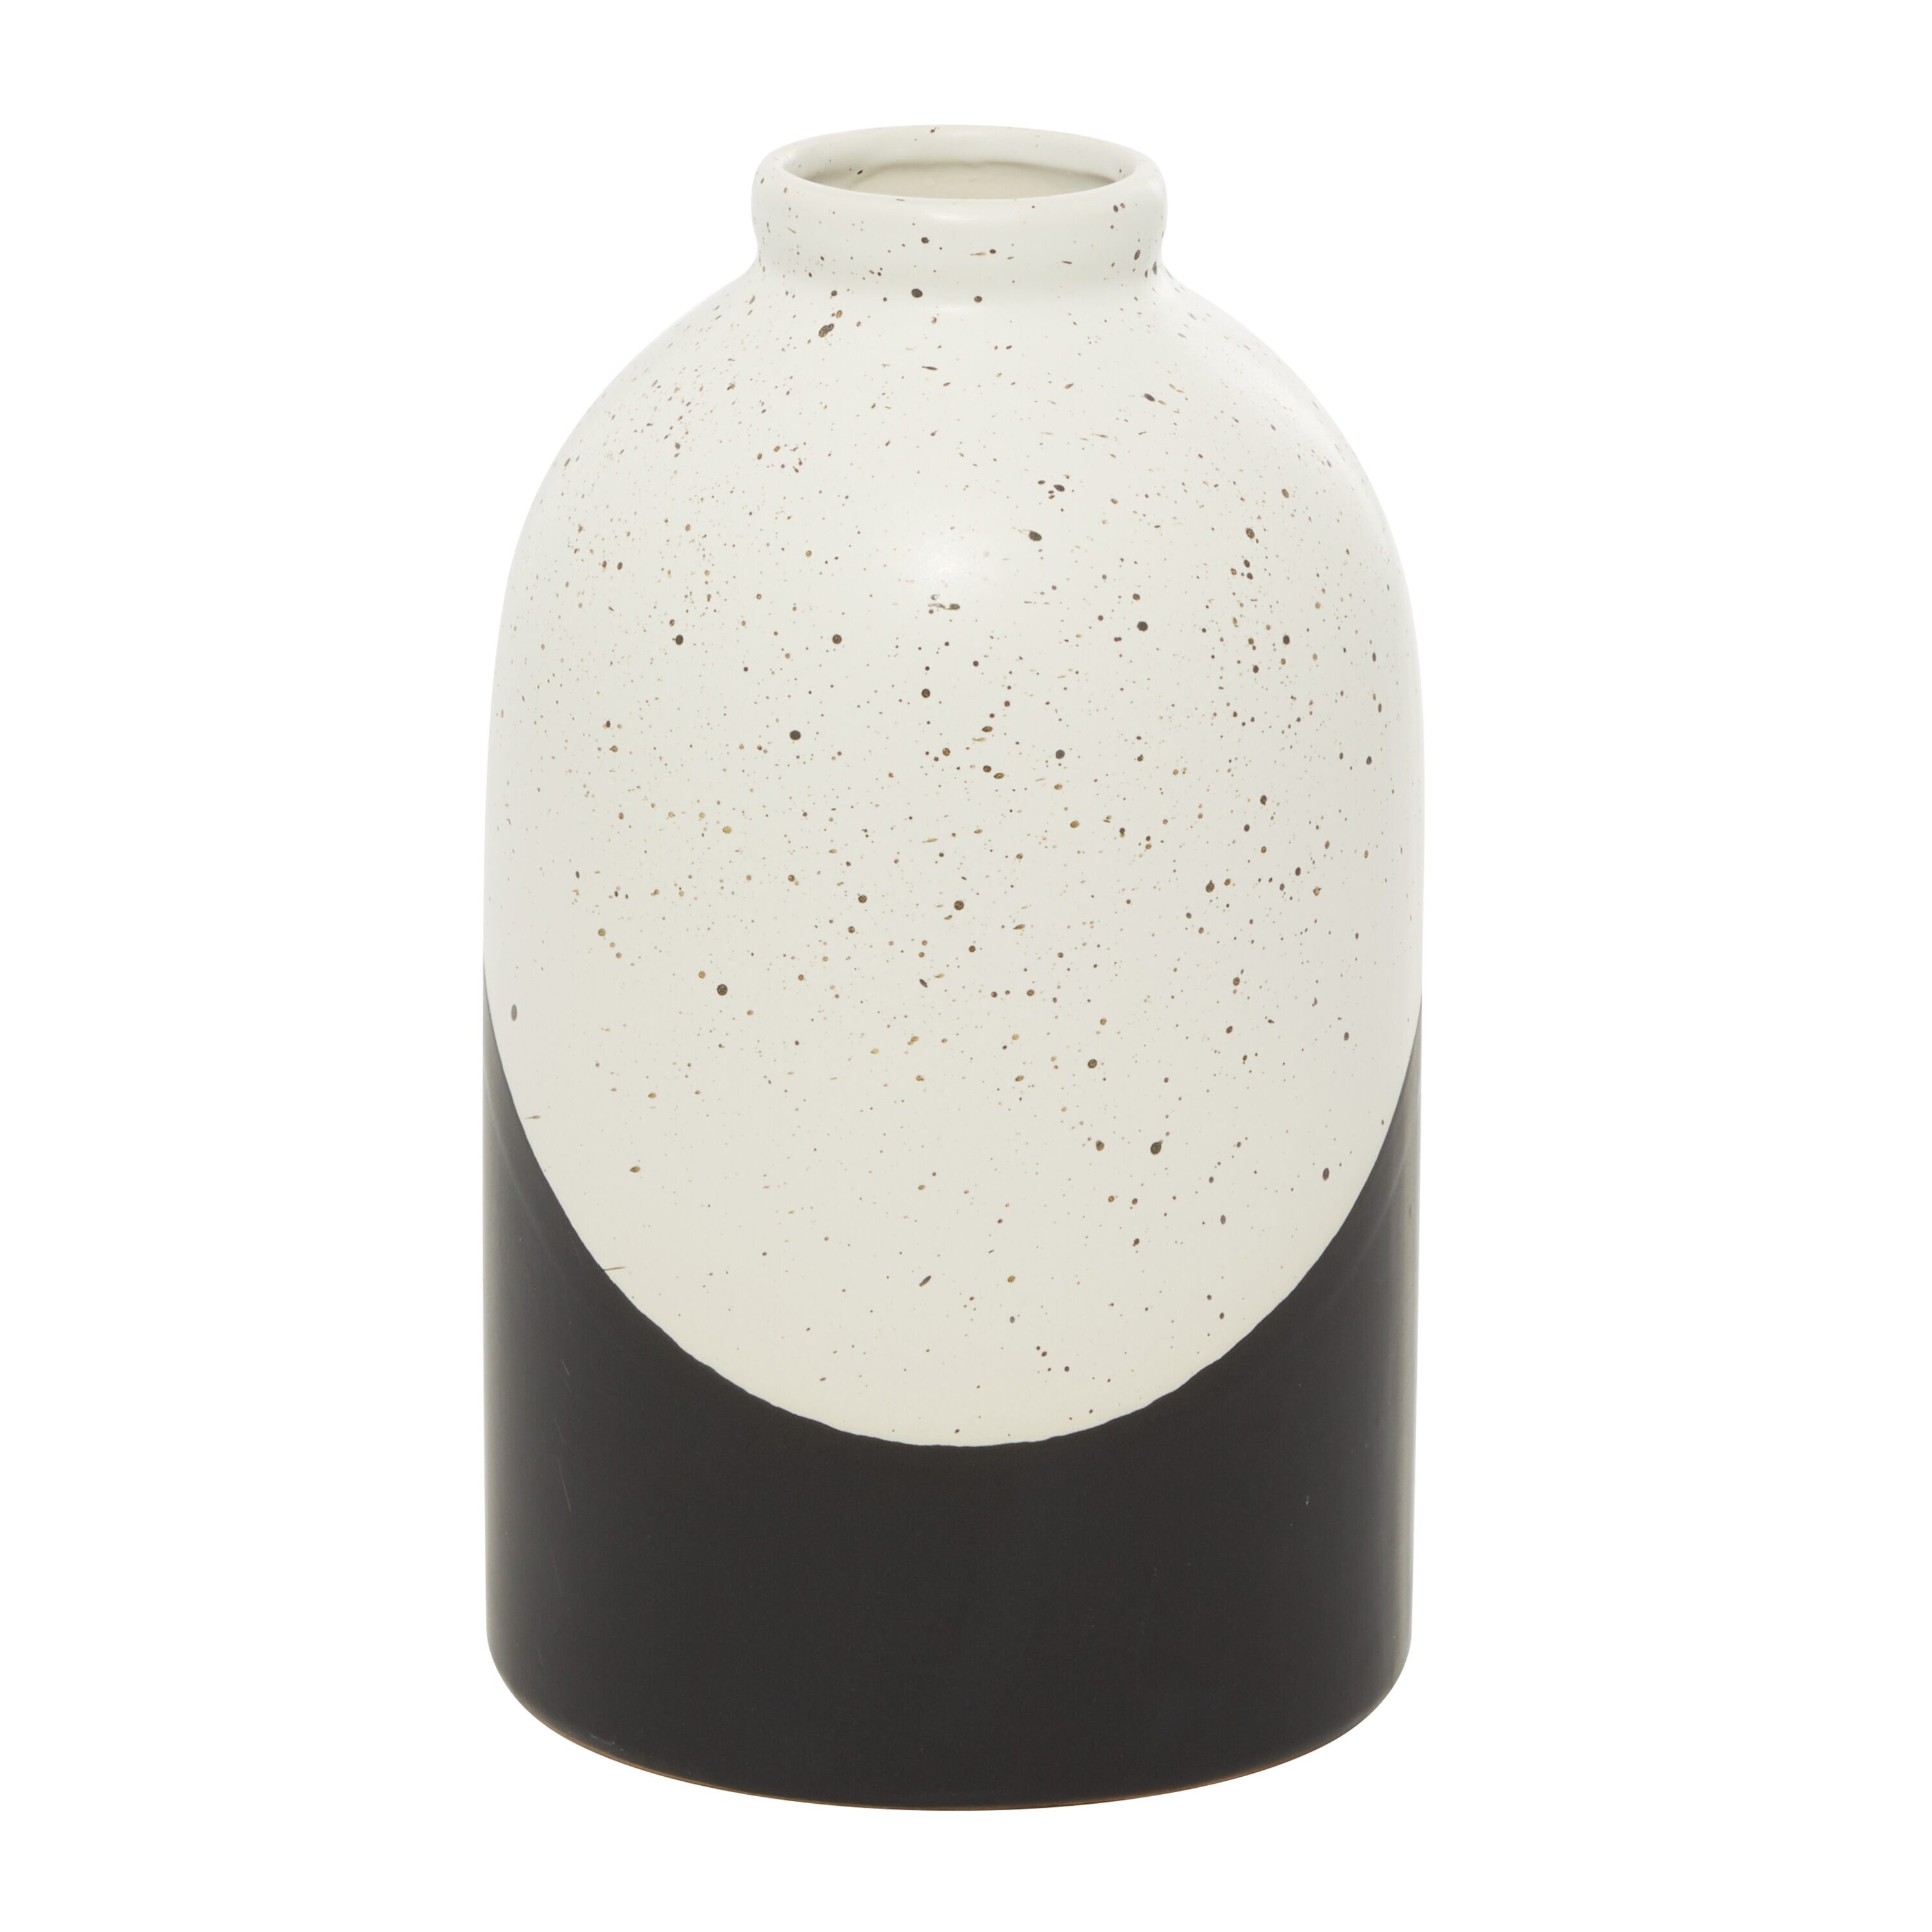 Grayson Lane Black Stone Modern Vase in the Decorative Accessories ...